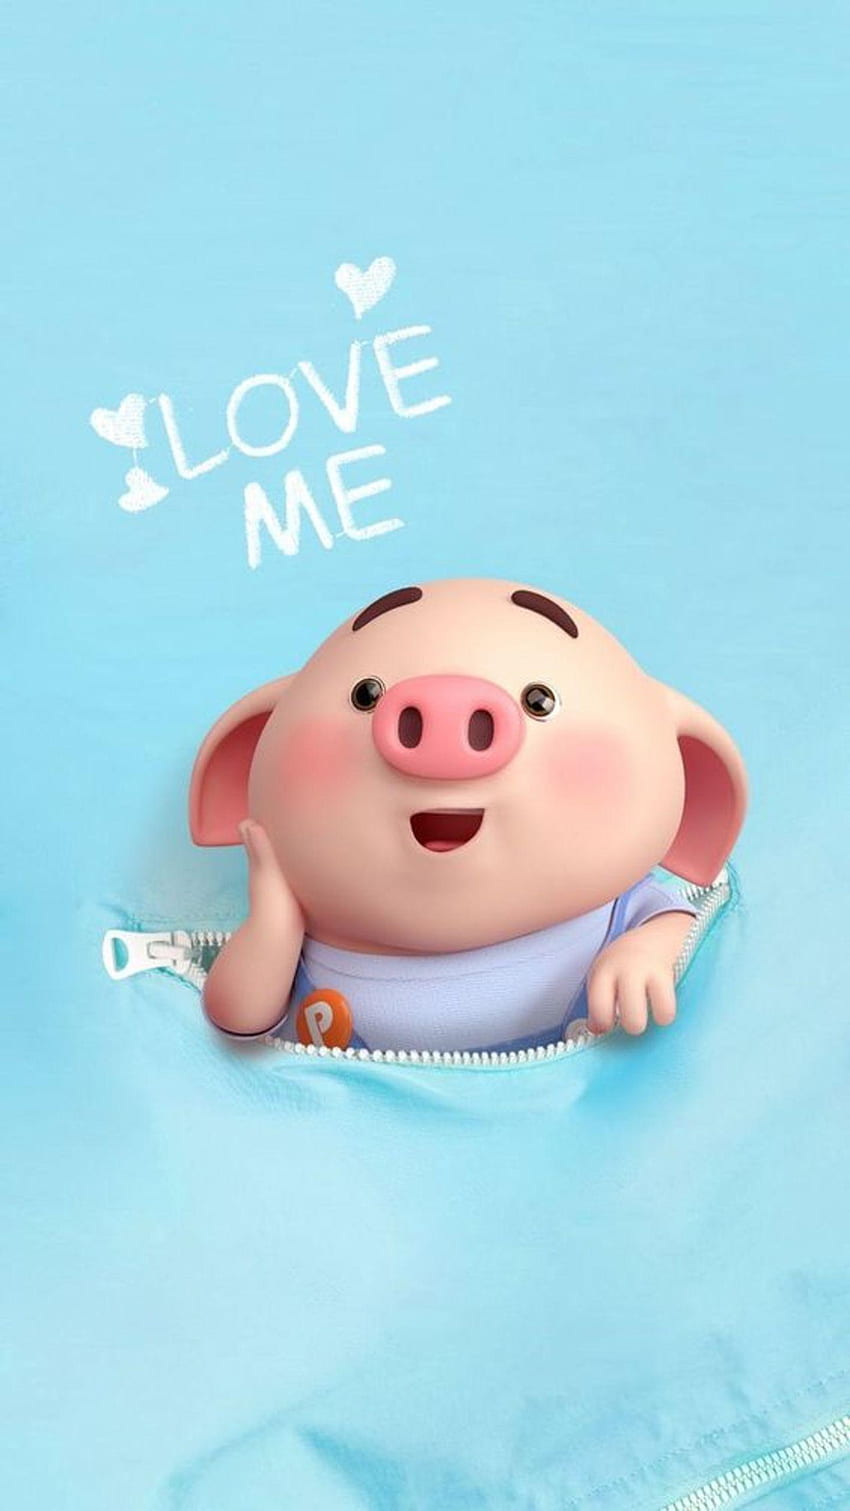 Bạn đang tìm kiếm hình nền cho điện thoại của mình? Thì đây chính là sự lựa chọn tuyệt vời cho bạn - Hình nền Piggy Pig Pigs HD Wallpapers chứa đầy những hình ảnh đáng yêu của những chú heo xinh xắn và đầy sức sống.